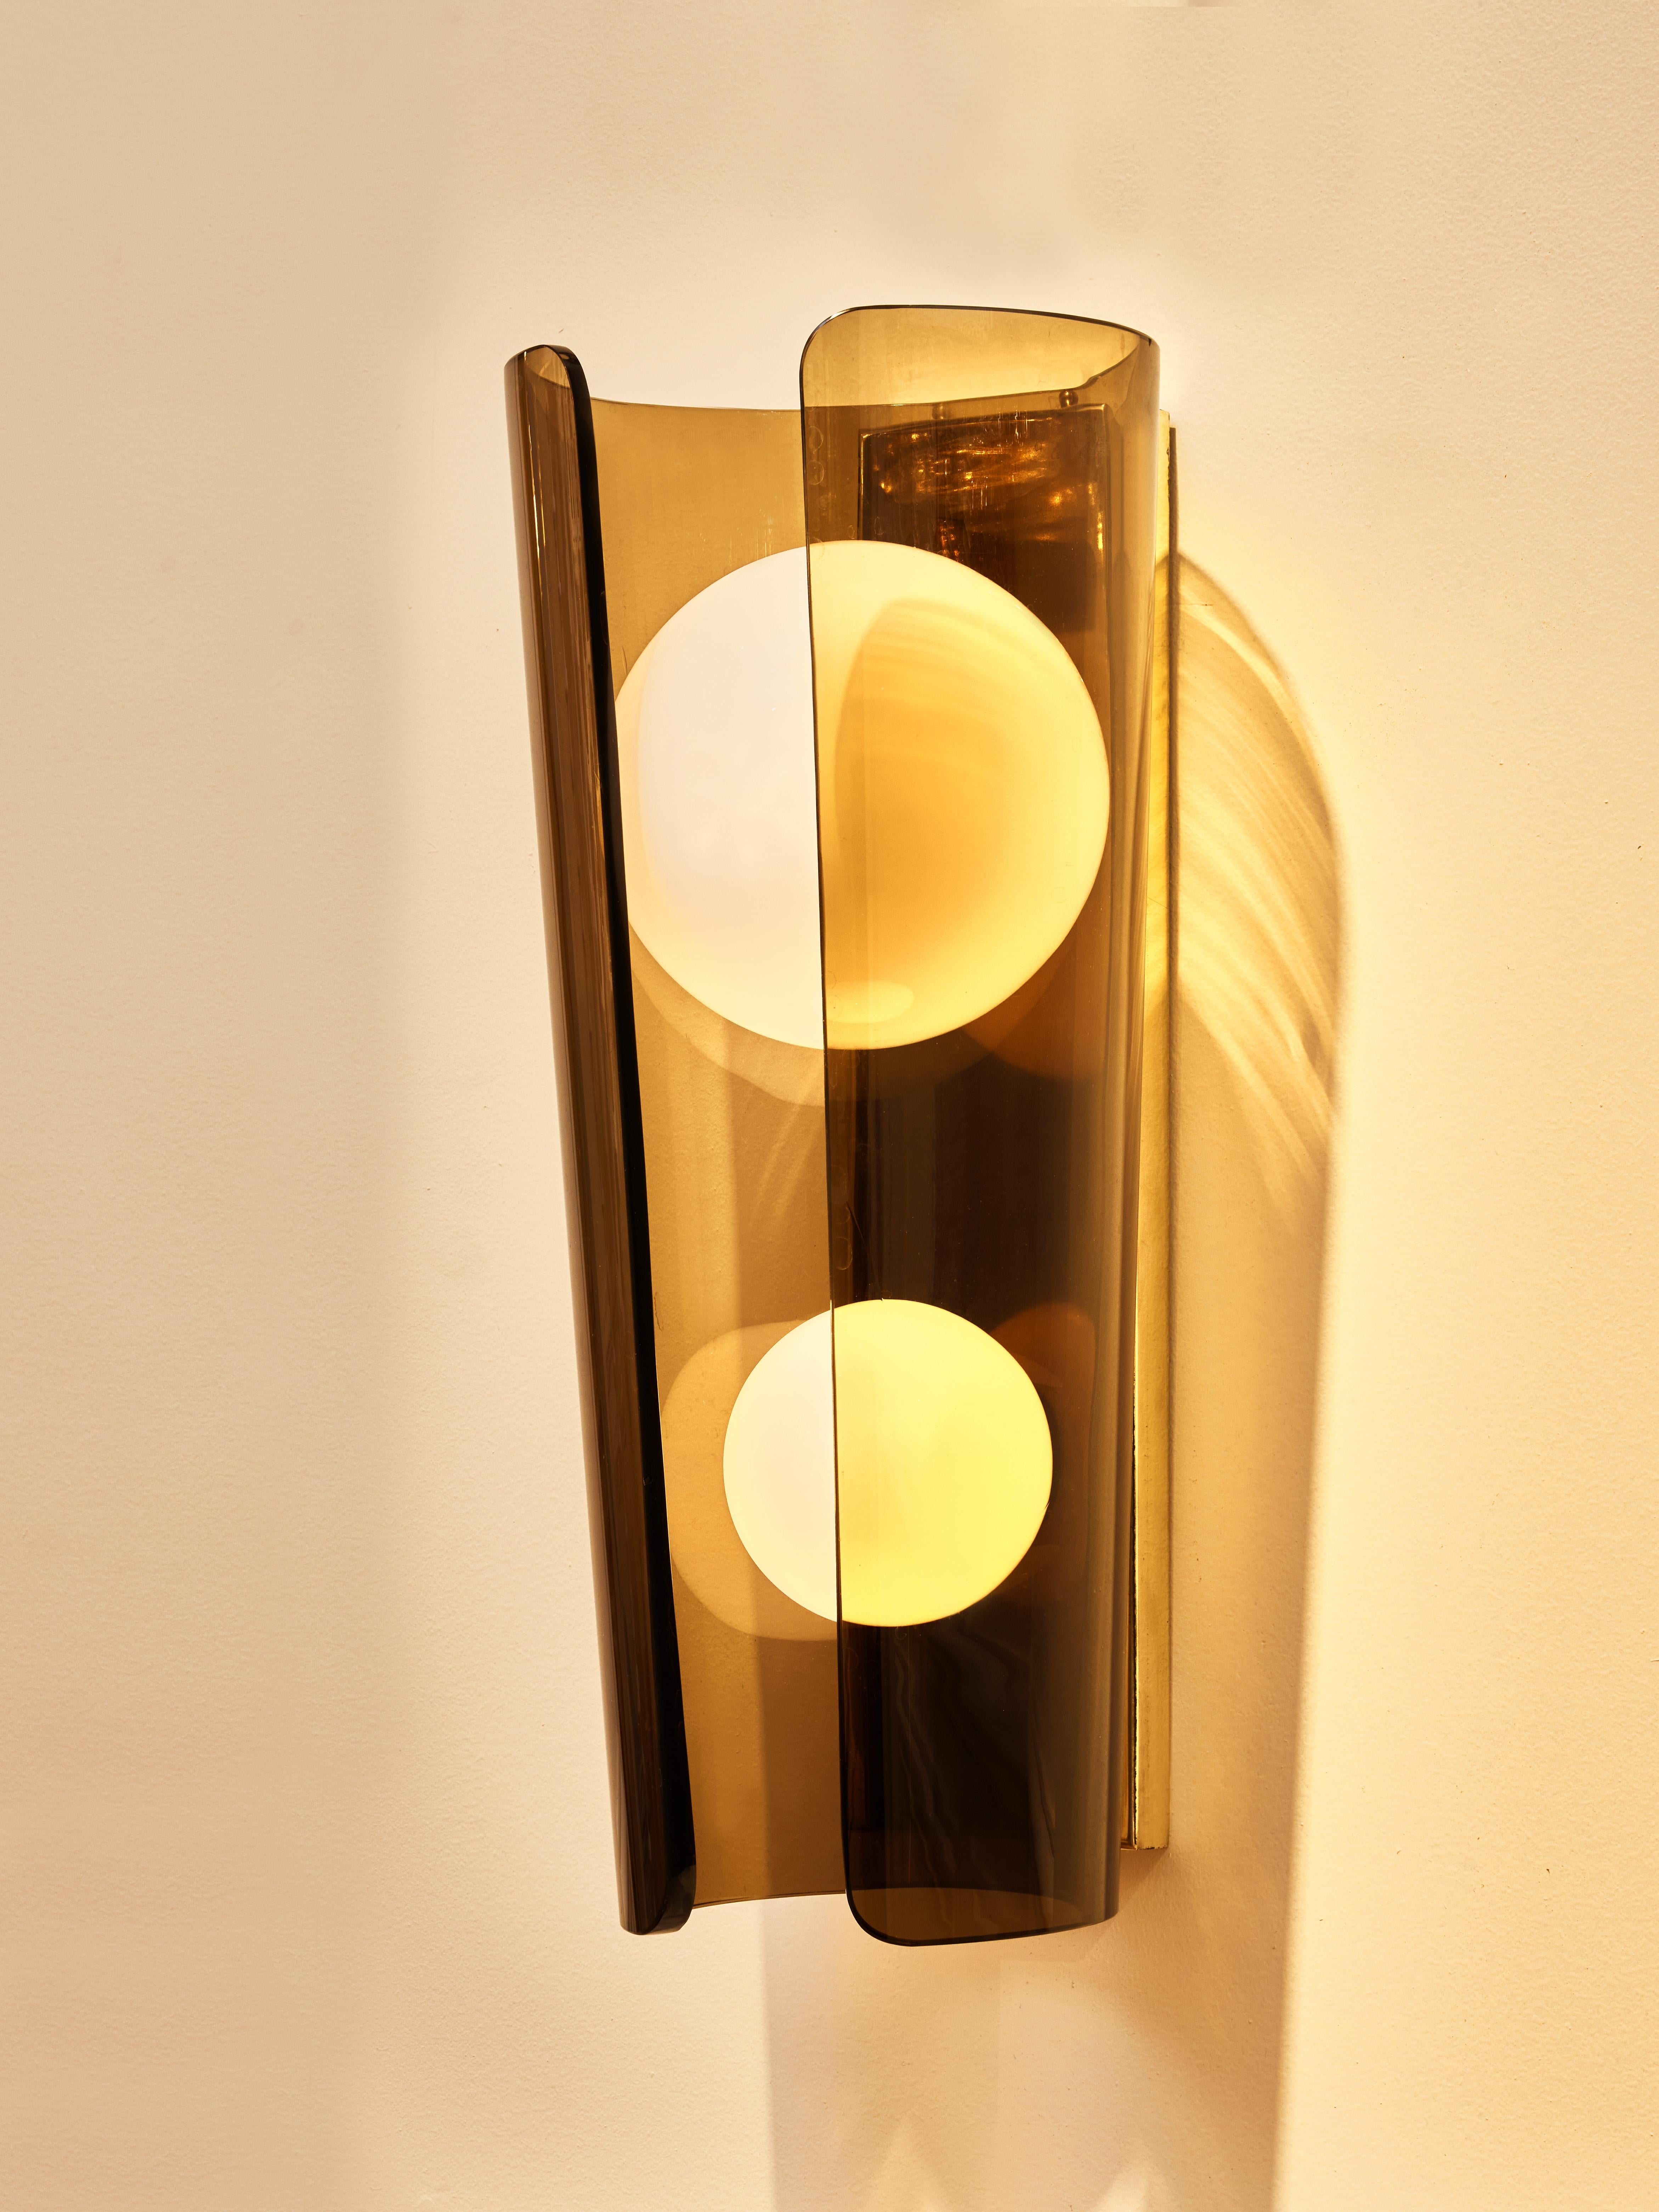 Hervorragendes Paar Wandleuchter aus Messing mit geräuchertem Murano-Glas und Opalglas-Kugeln.
Gestaltung durch das Studio Glustin.
Italien, 2023